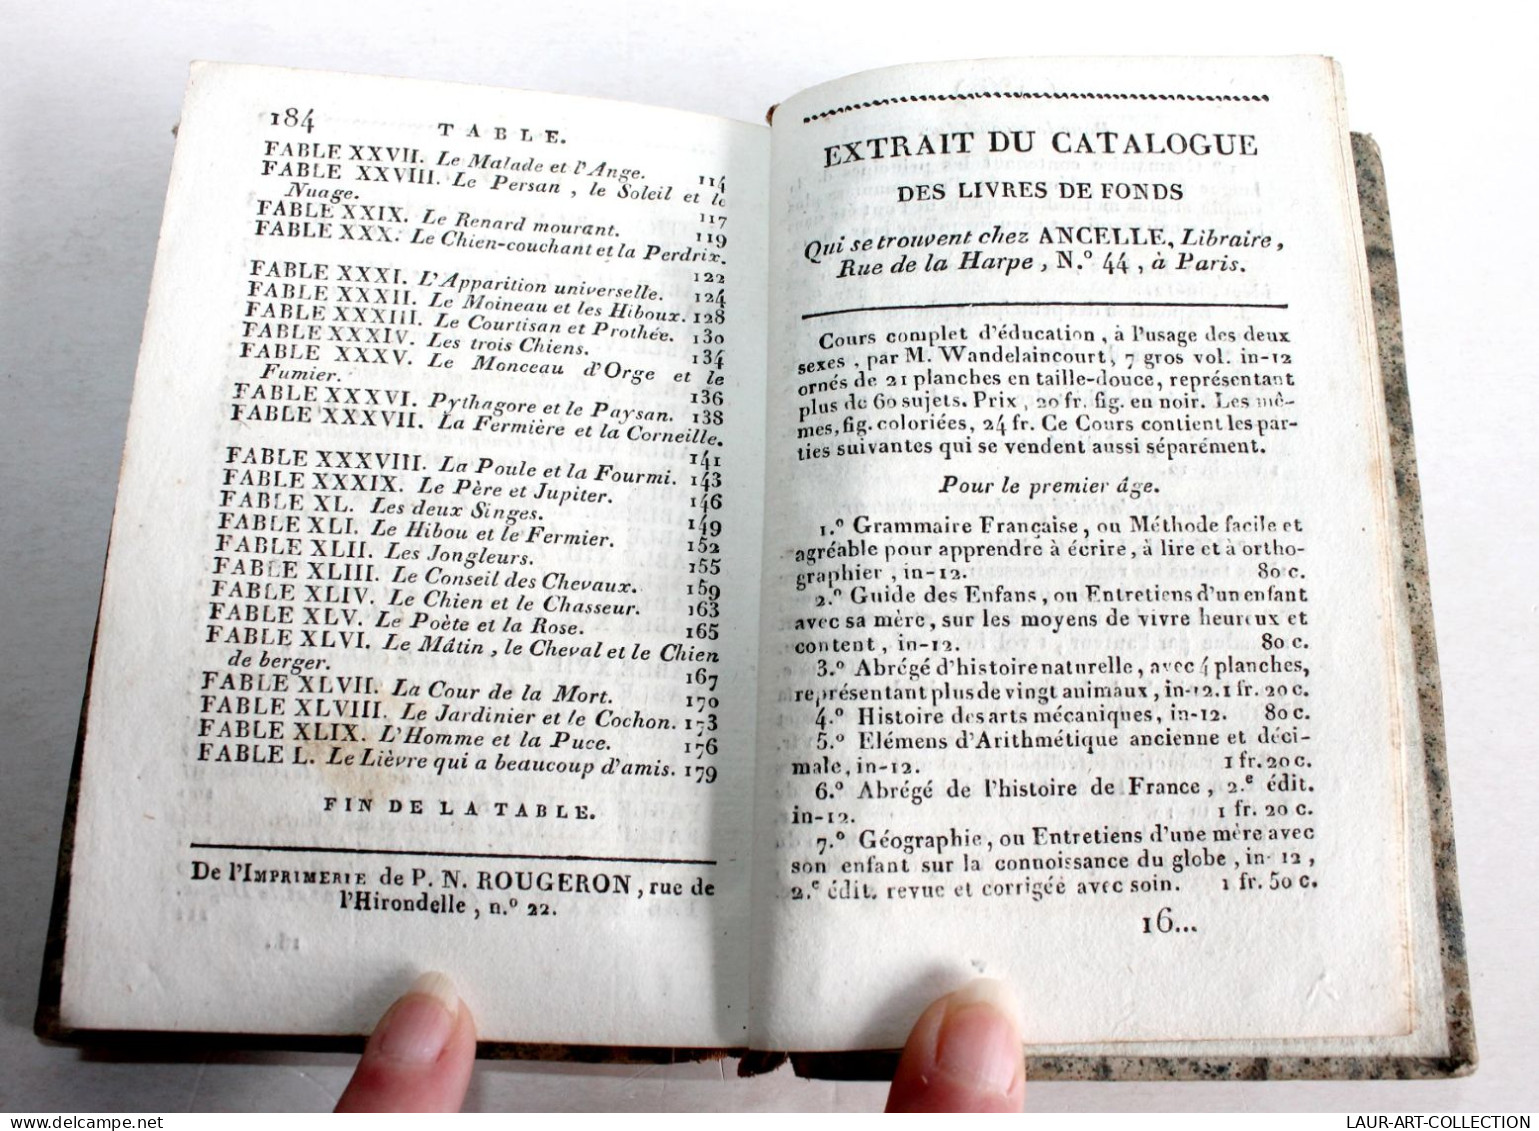 FABLES DE GAY, TRADUITES EN VERS FRANCAIS AVEC GRAVURES 1811 ANCELLE LIBRAIRE / ANCIEN LIVRE XIXe SIECLE (1803.131) - Autores Franceses